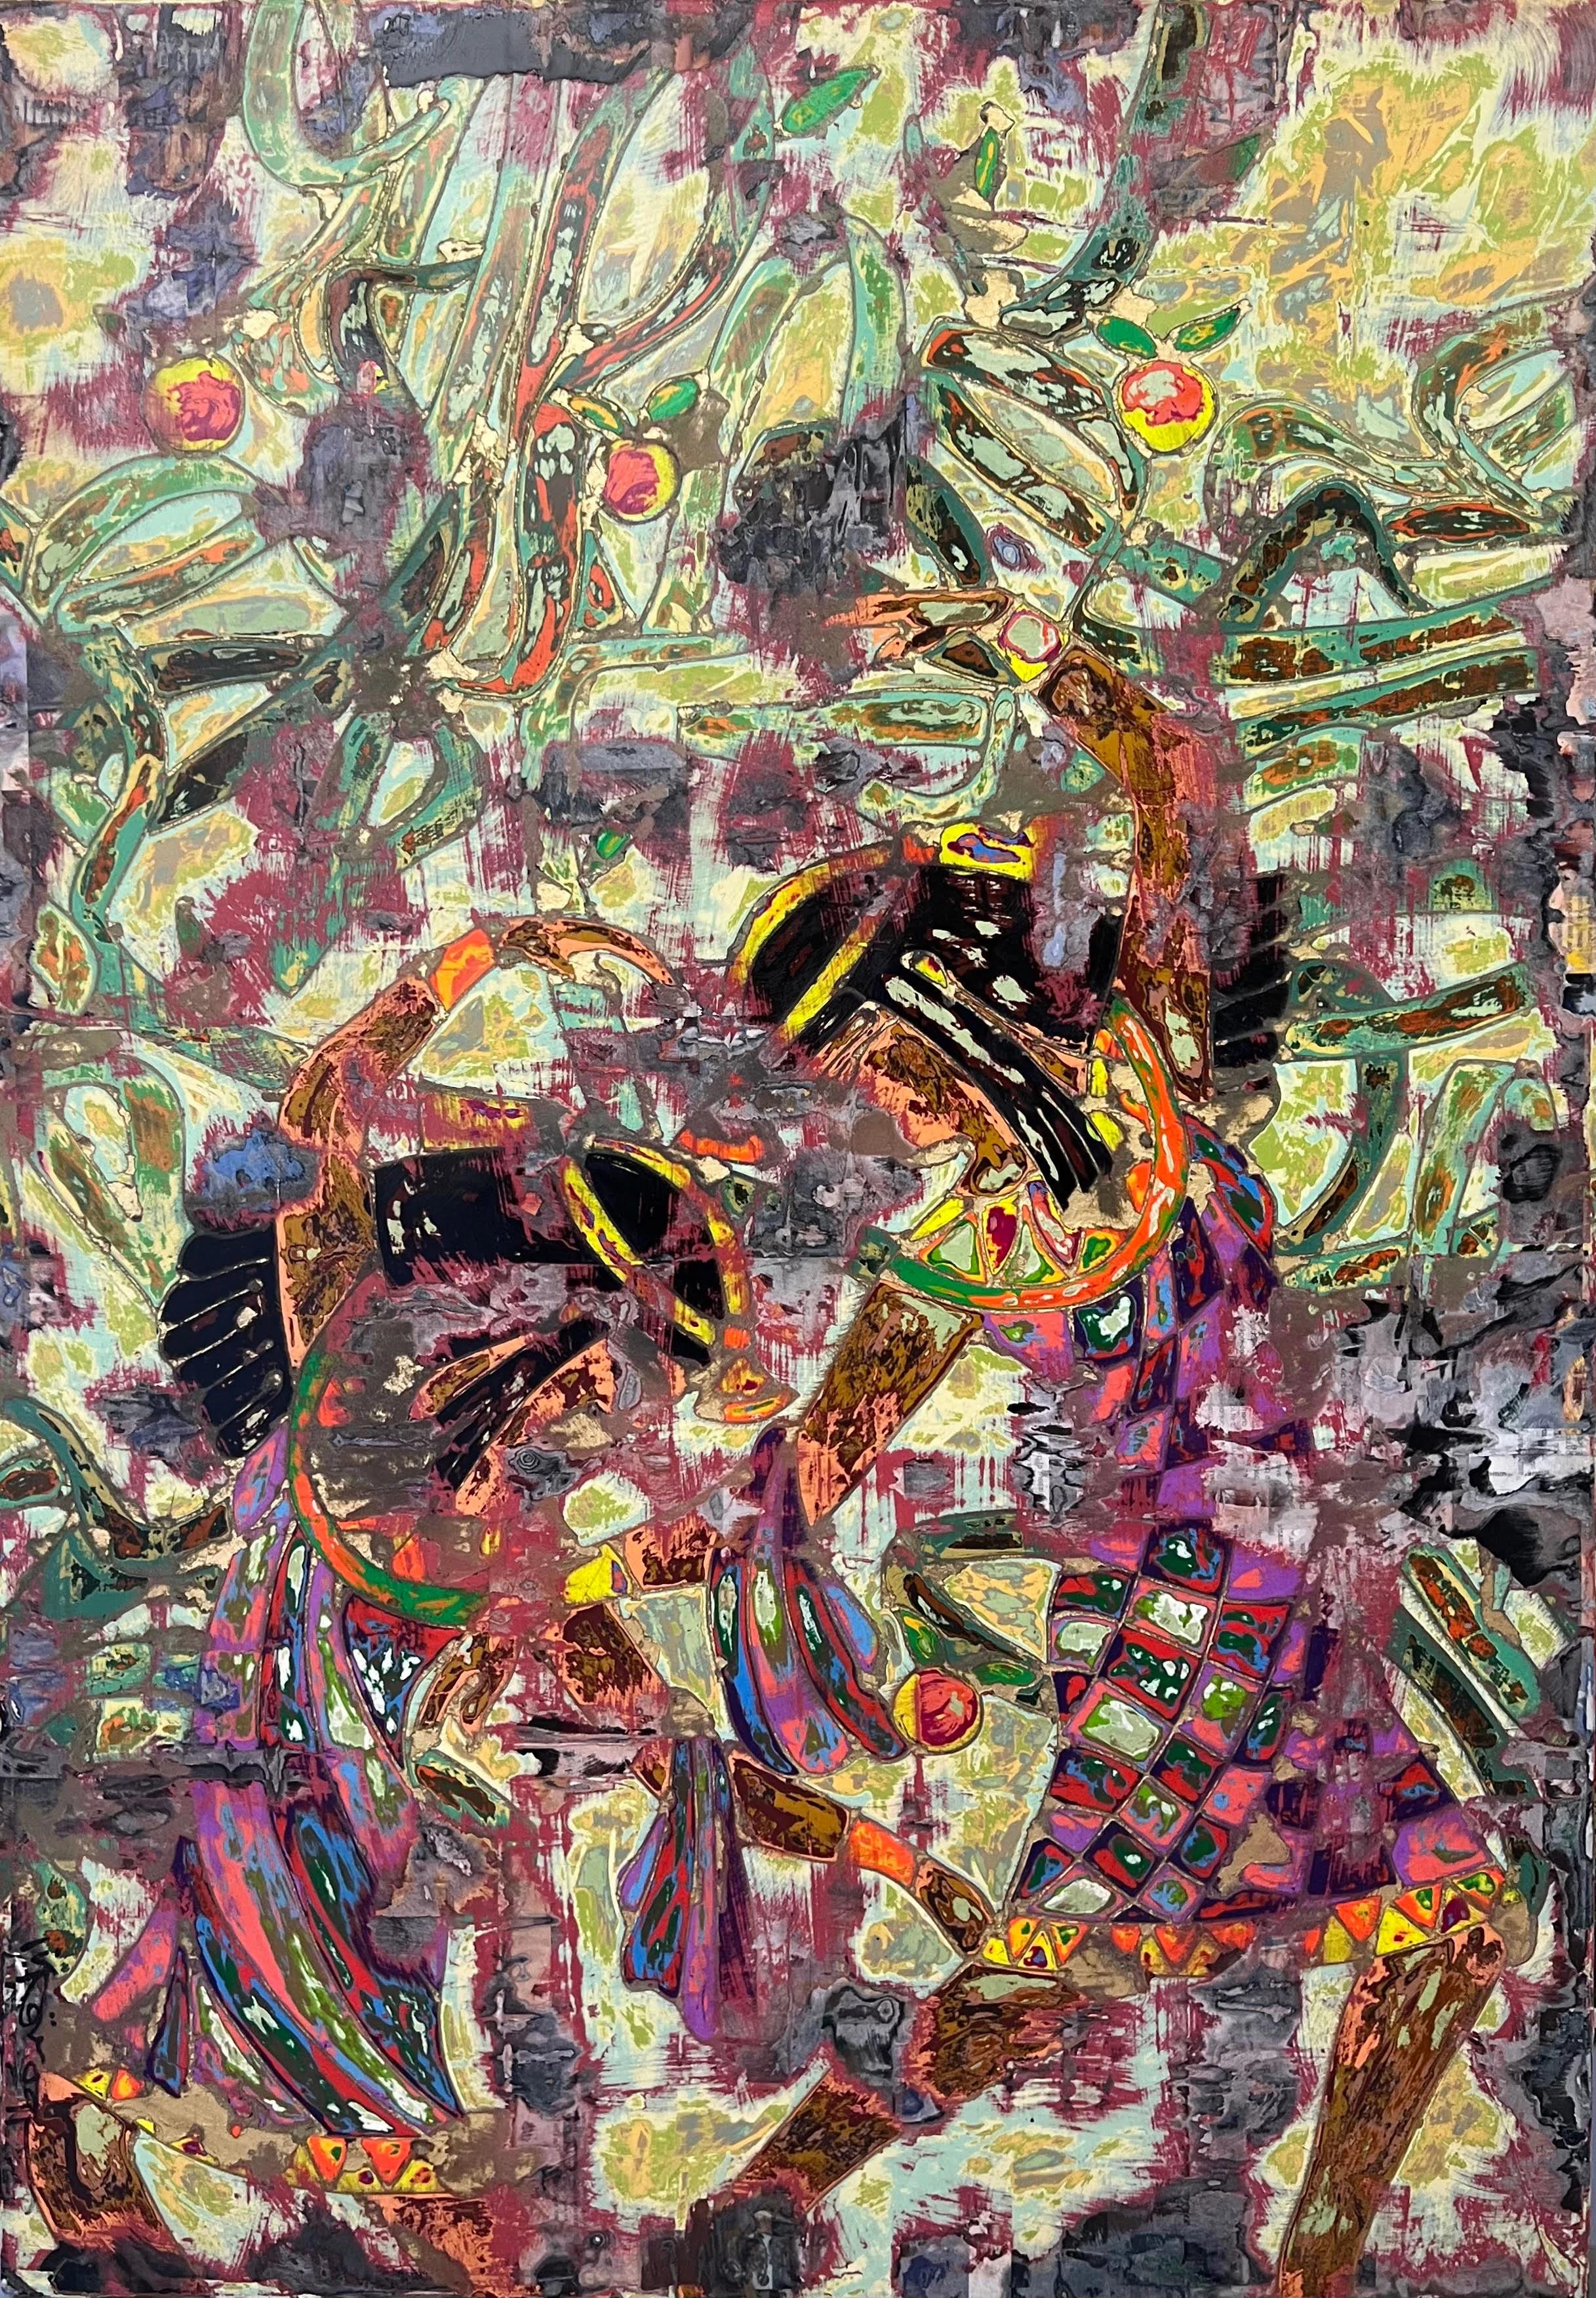 "Revere" peinture abstraite 39" x 28" par Ibrahim Khatab

Ibrahim Khatab est né au Caire en 1984. Il travaille comme co-enseignant à l'université du Caire et mélange dans ses œuvres la peinture, l'art vidéo et l'installation. Il a commencé dès son